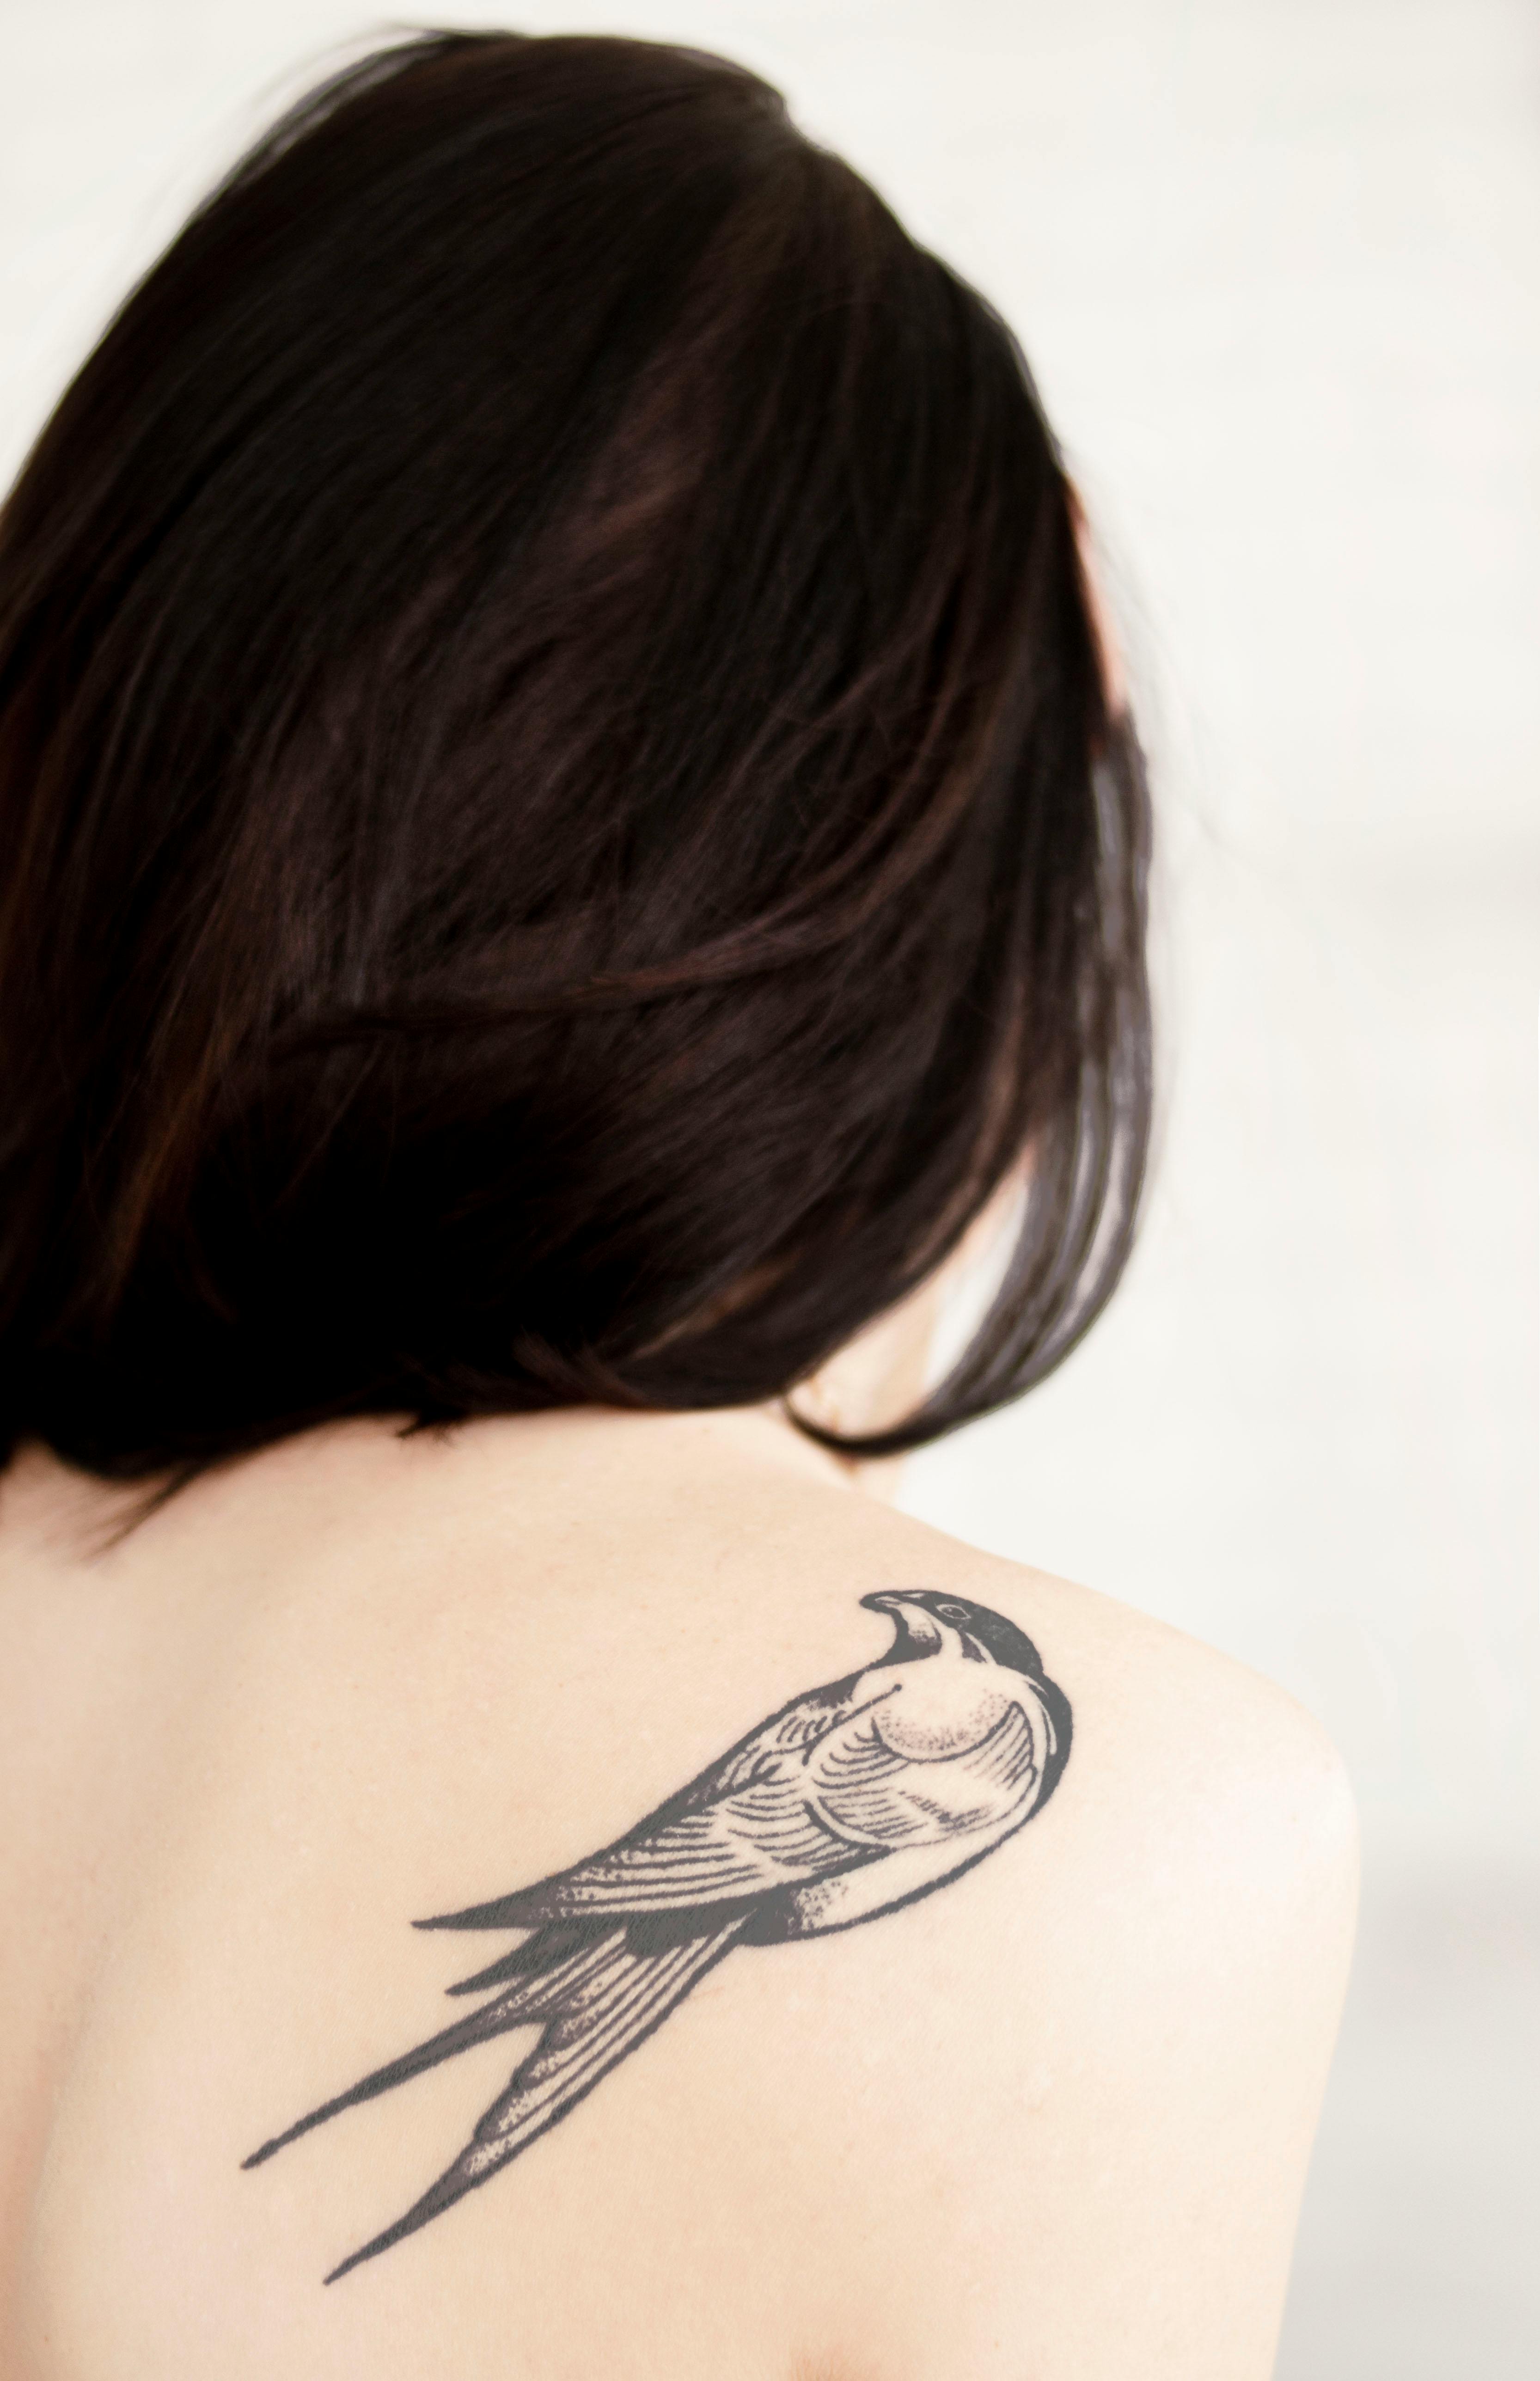 Gallery — Tattoos by Brynn